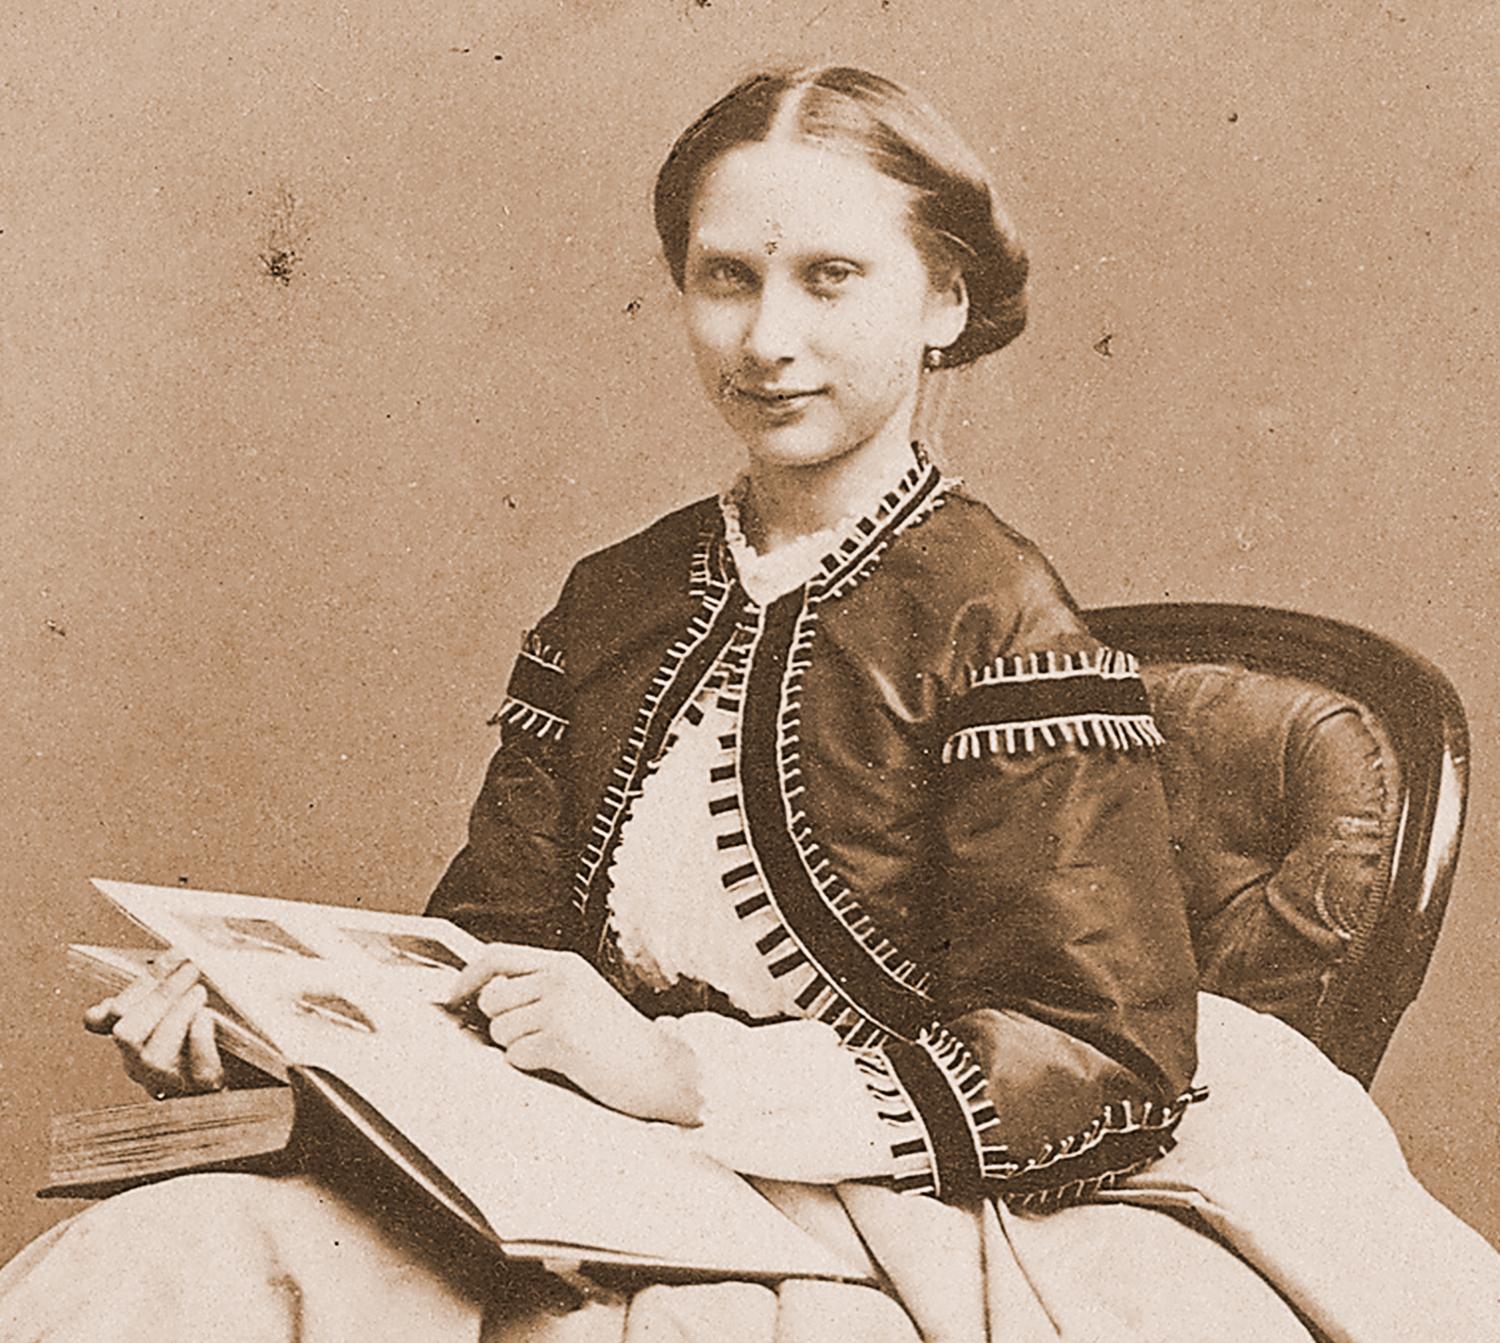 Bildande bilder  Prinsessan Lovisa  fotograferad på 1860- talet med den senaste nymodigheten – fotoalbumet.
Foto: BERTHA VALERIUS